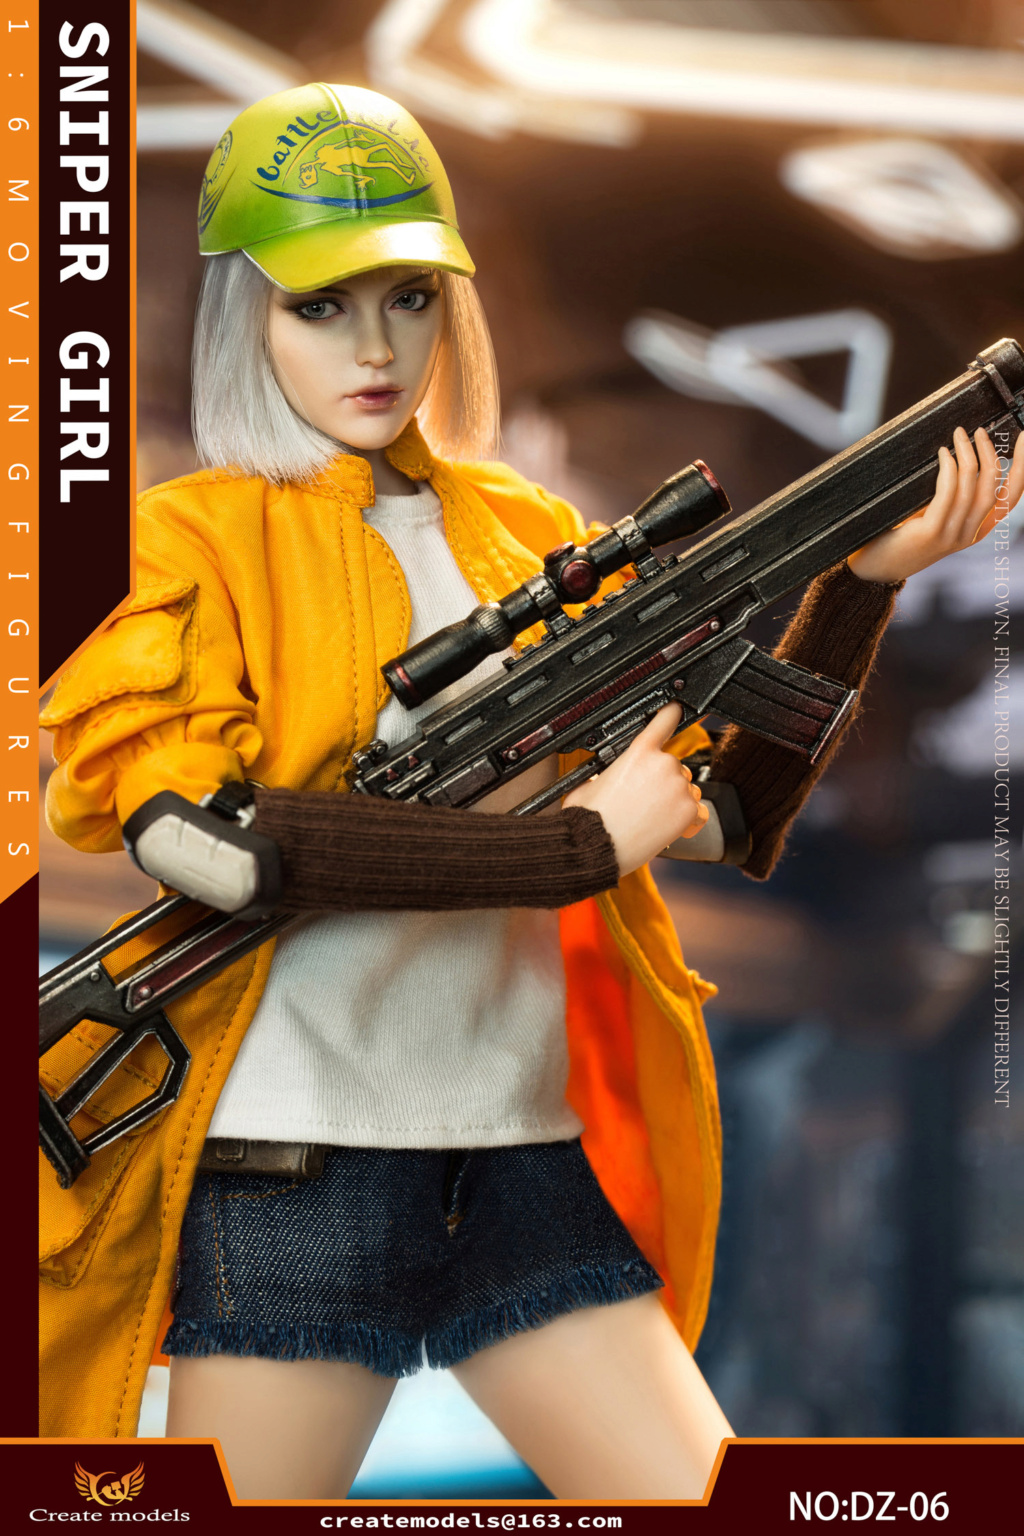 NEW PRODUCT: Createmodels: 1/6 Sniper Girl-Songbird/Lan Action Figures #DZ-05/DZ-06 18535310